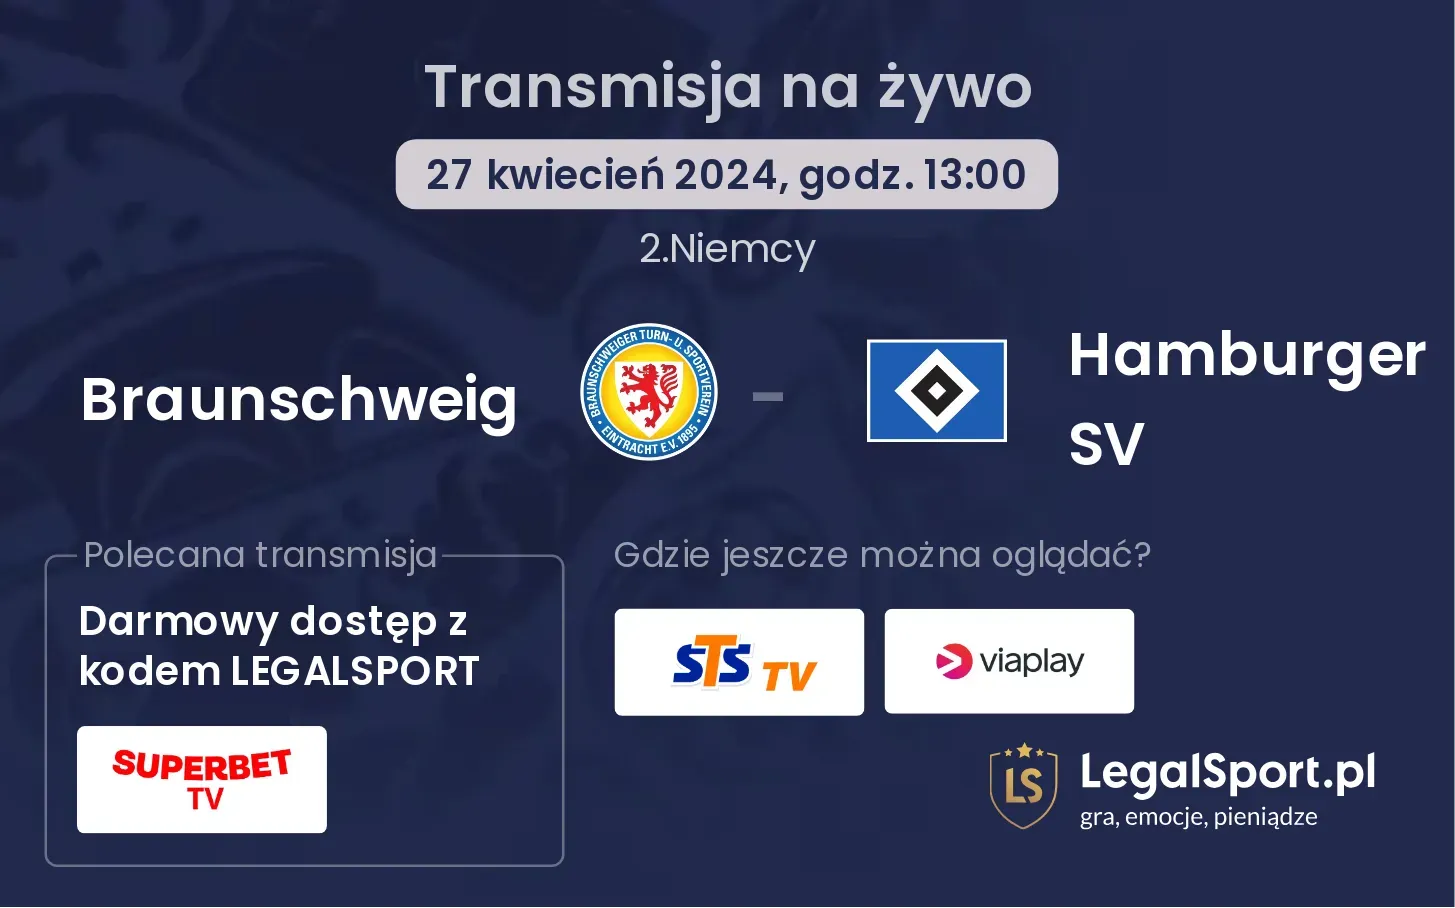 Braunschweig - Hamburger SV transmisja na żywo